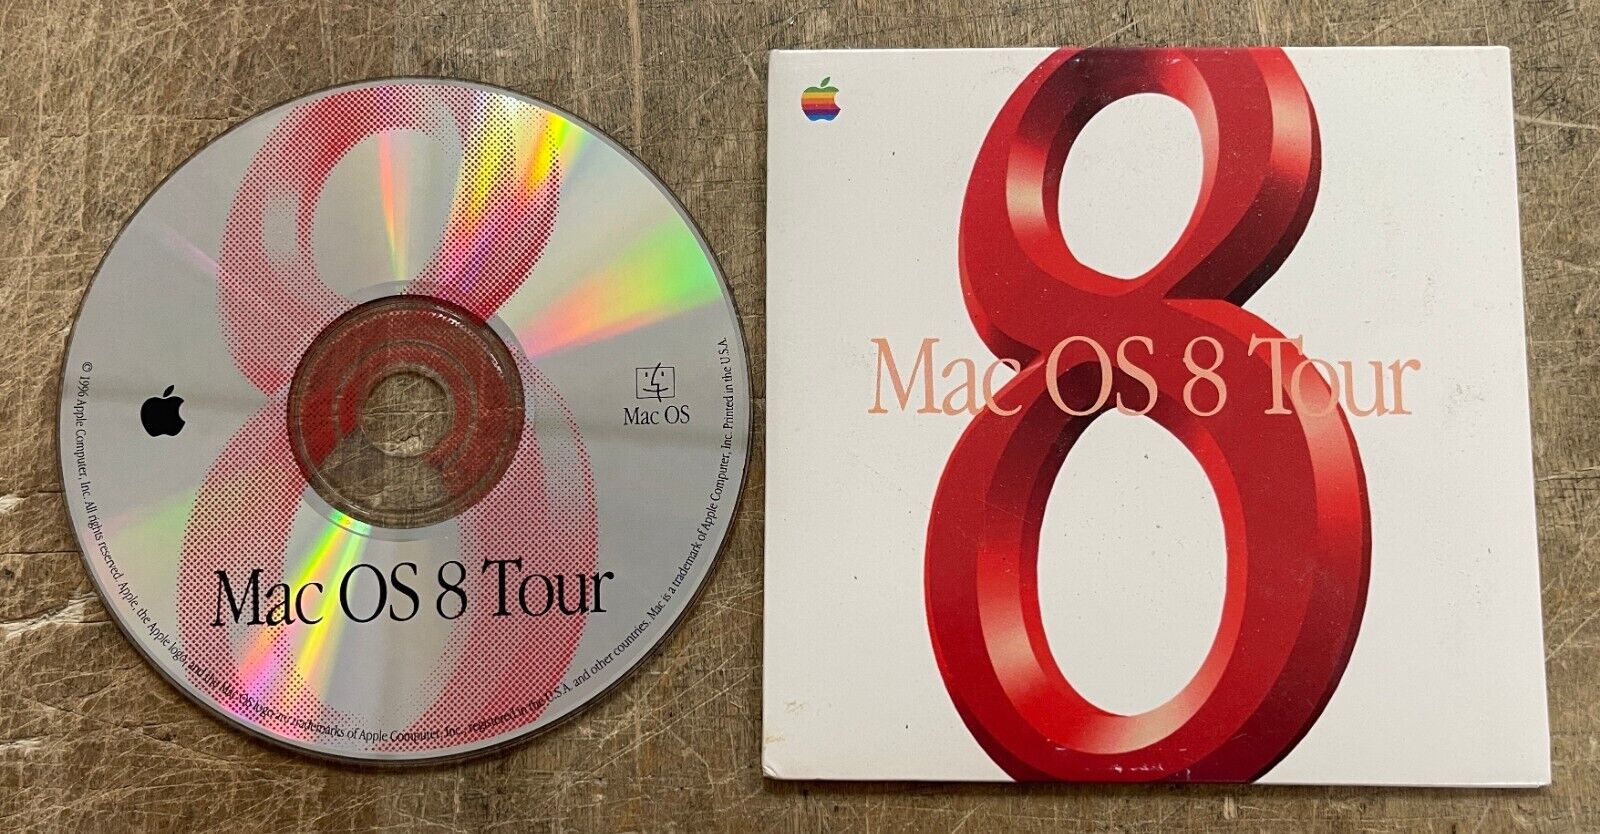 Apple Mac OS 8 Tour CD RARE